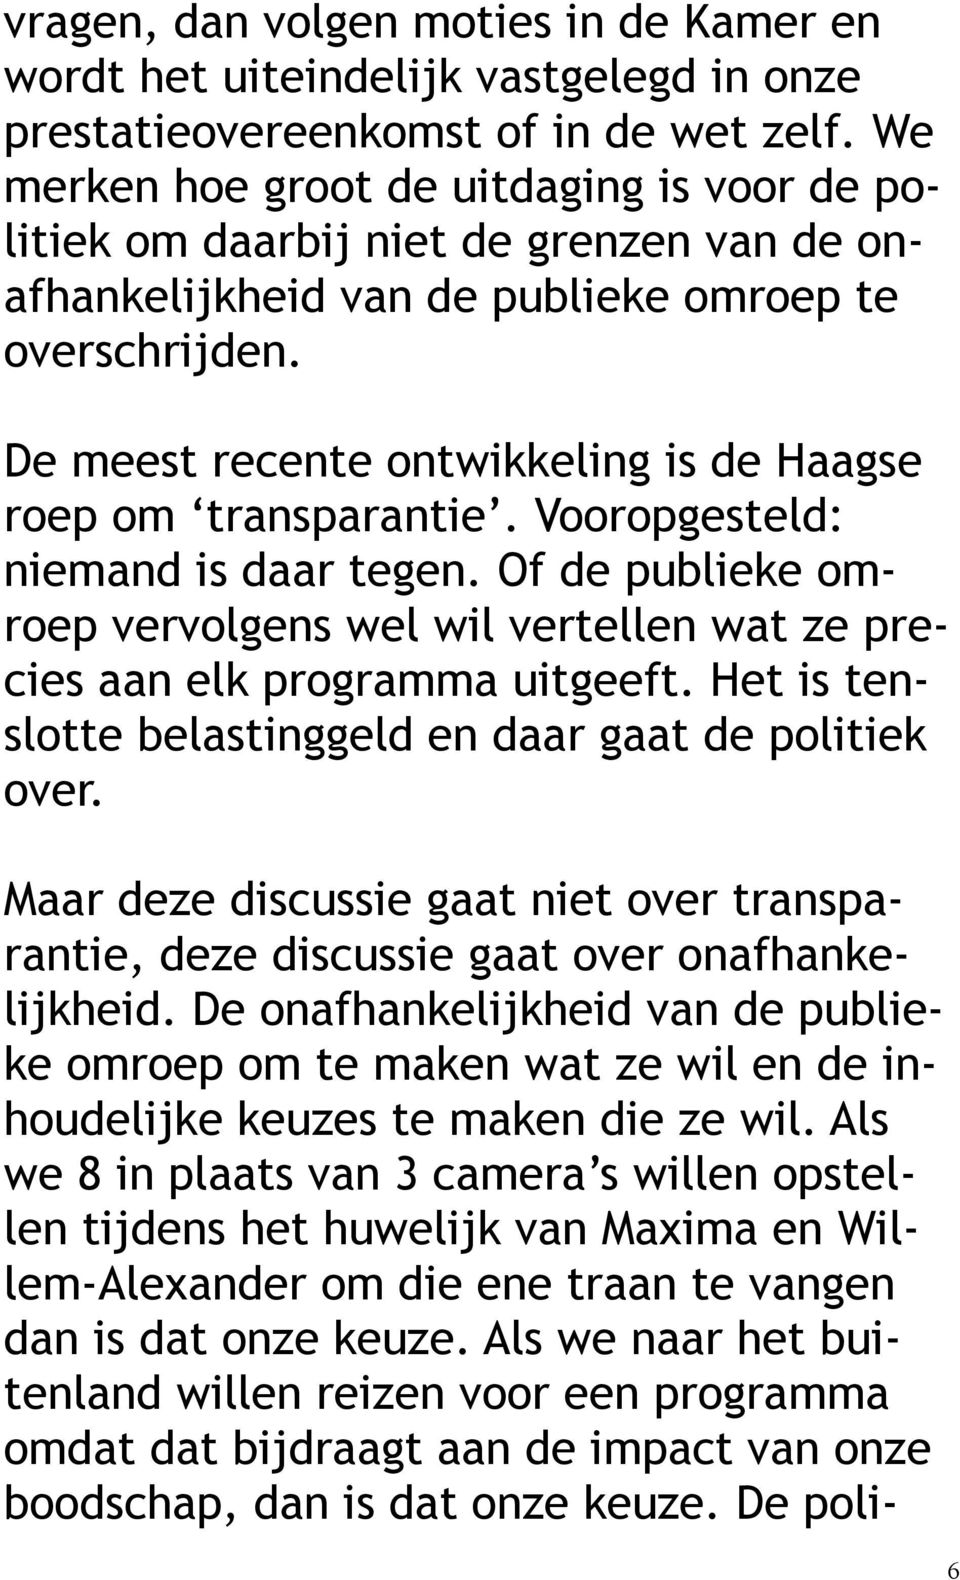 De meest recente ontwikkeling is de Haagse roep om transparantie. Vooropgesteld: niemand is daar tegen. Of de publieke omroep vervolgens wel wil vertellen wat ze precies aan elk programma uitgeeft.